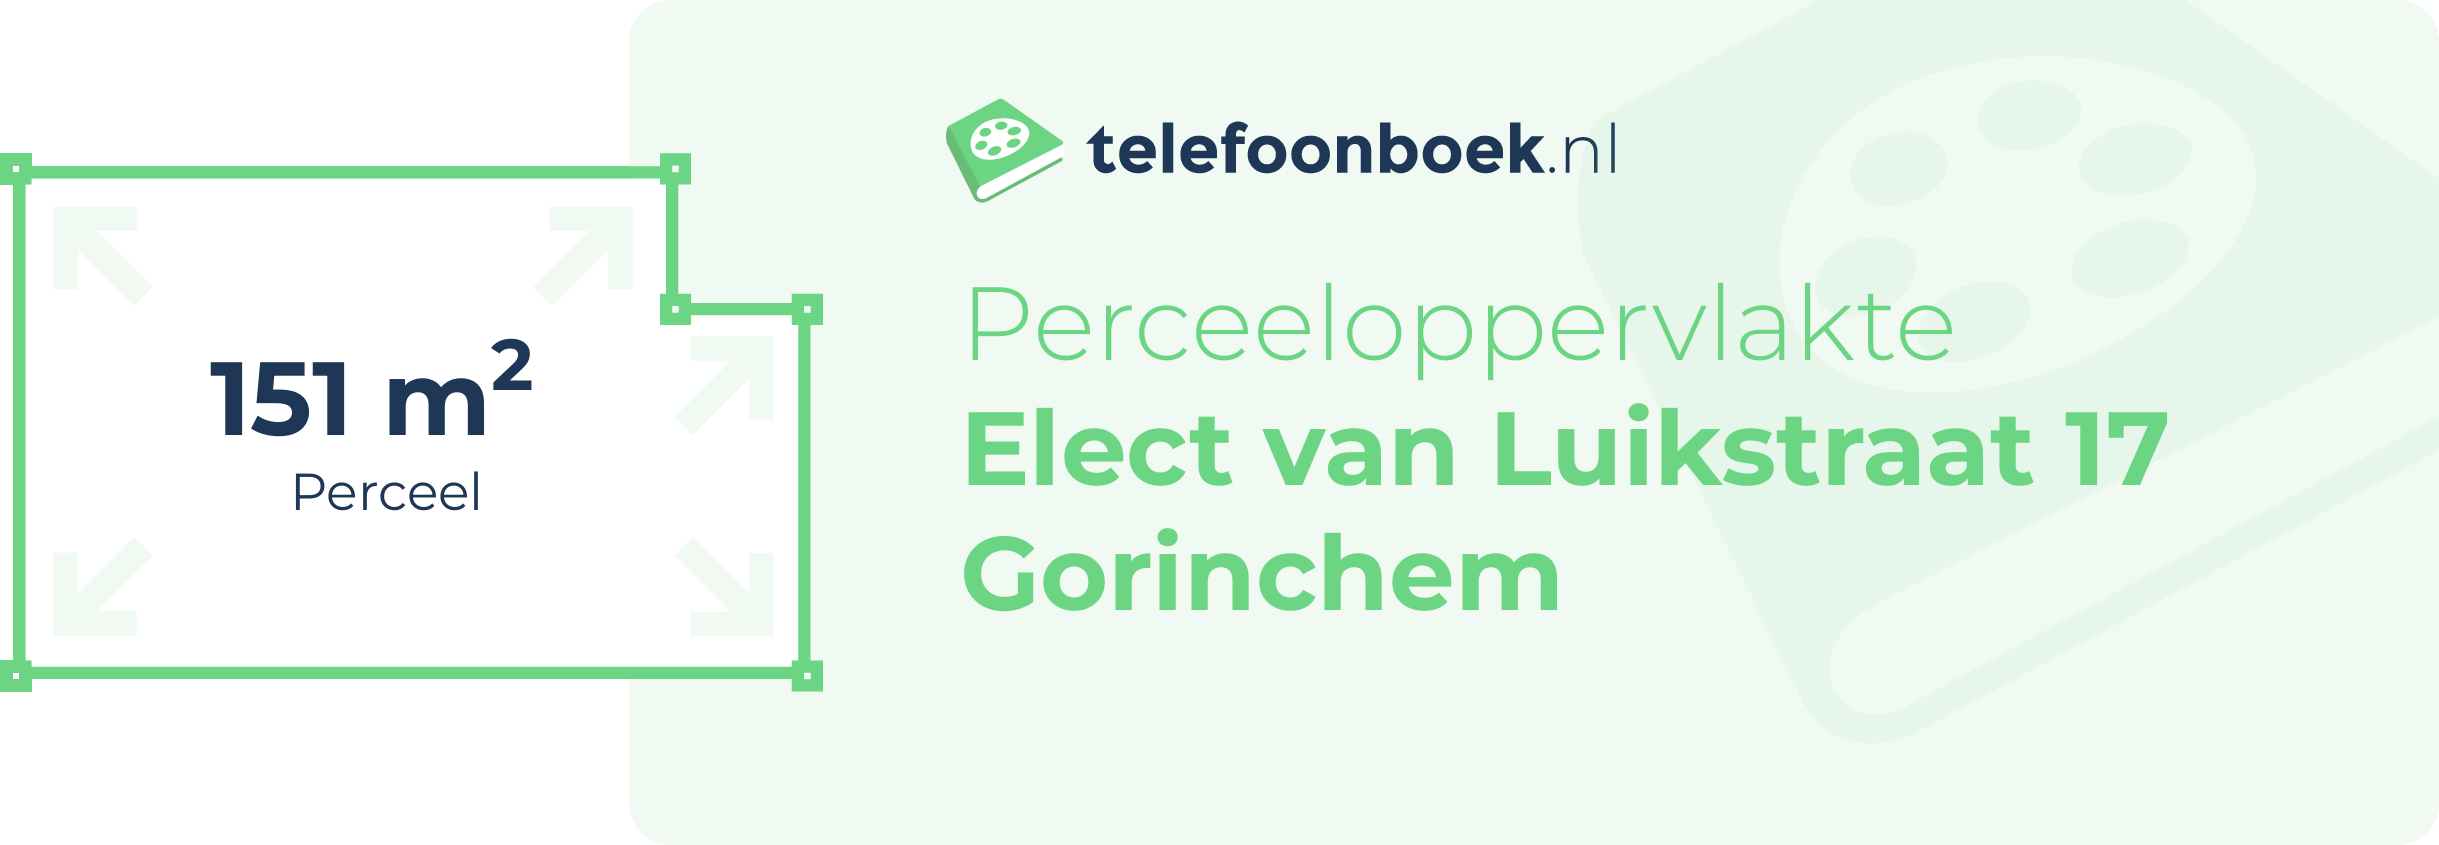 Perceeloppervlakte Elect Van Luikstraat 17 Gorinchem